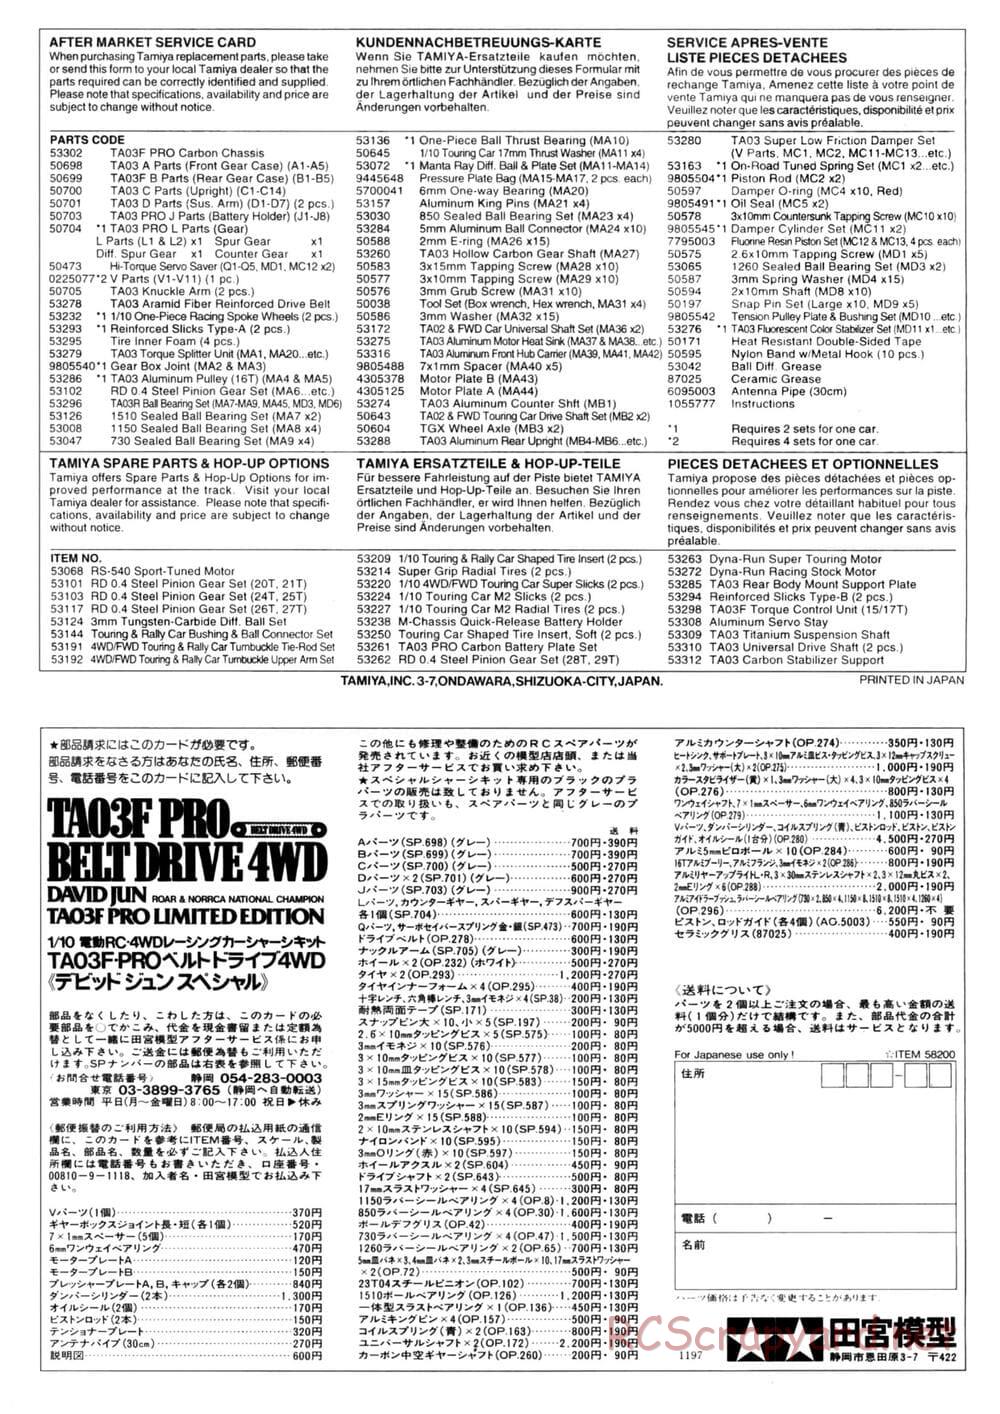 Tamiya - David Jun TA03F Pro Chassis - Manual - Page 25